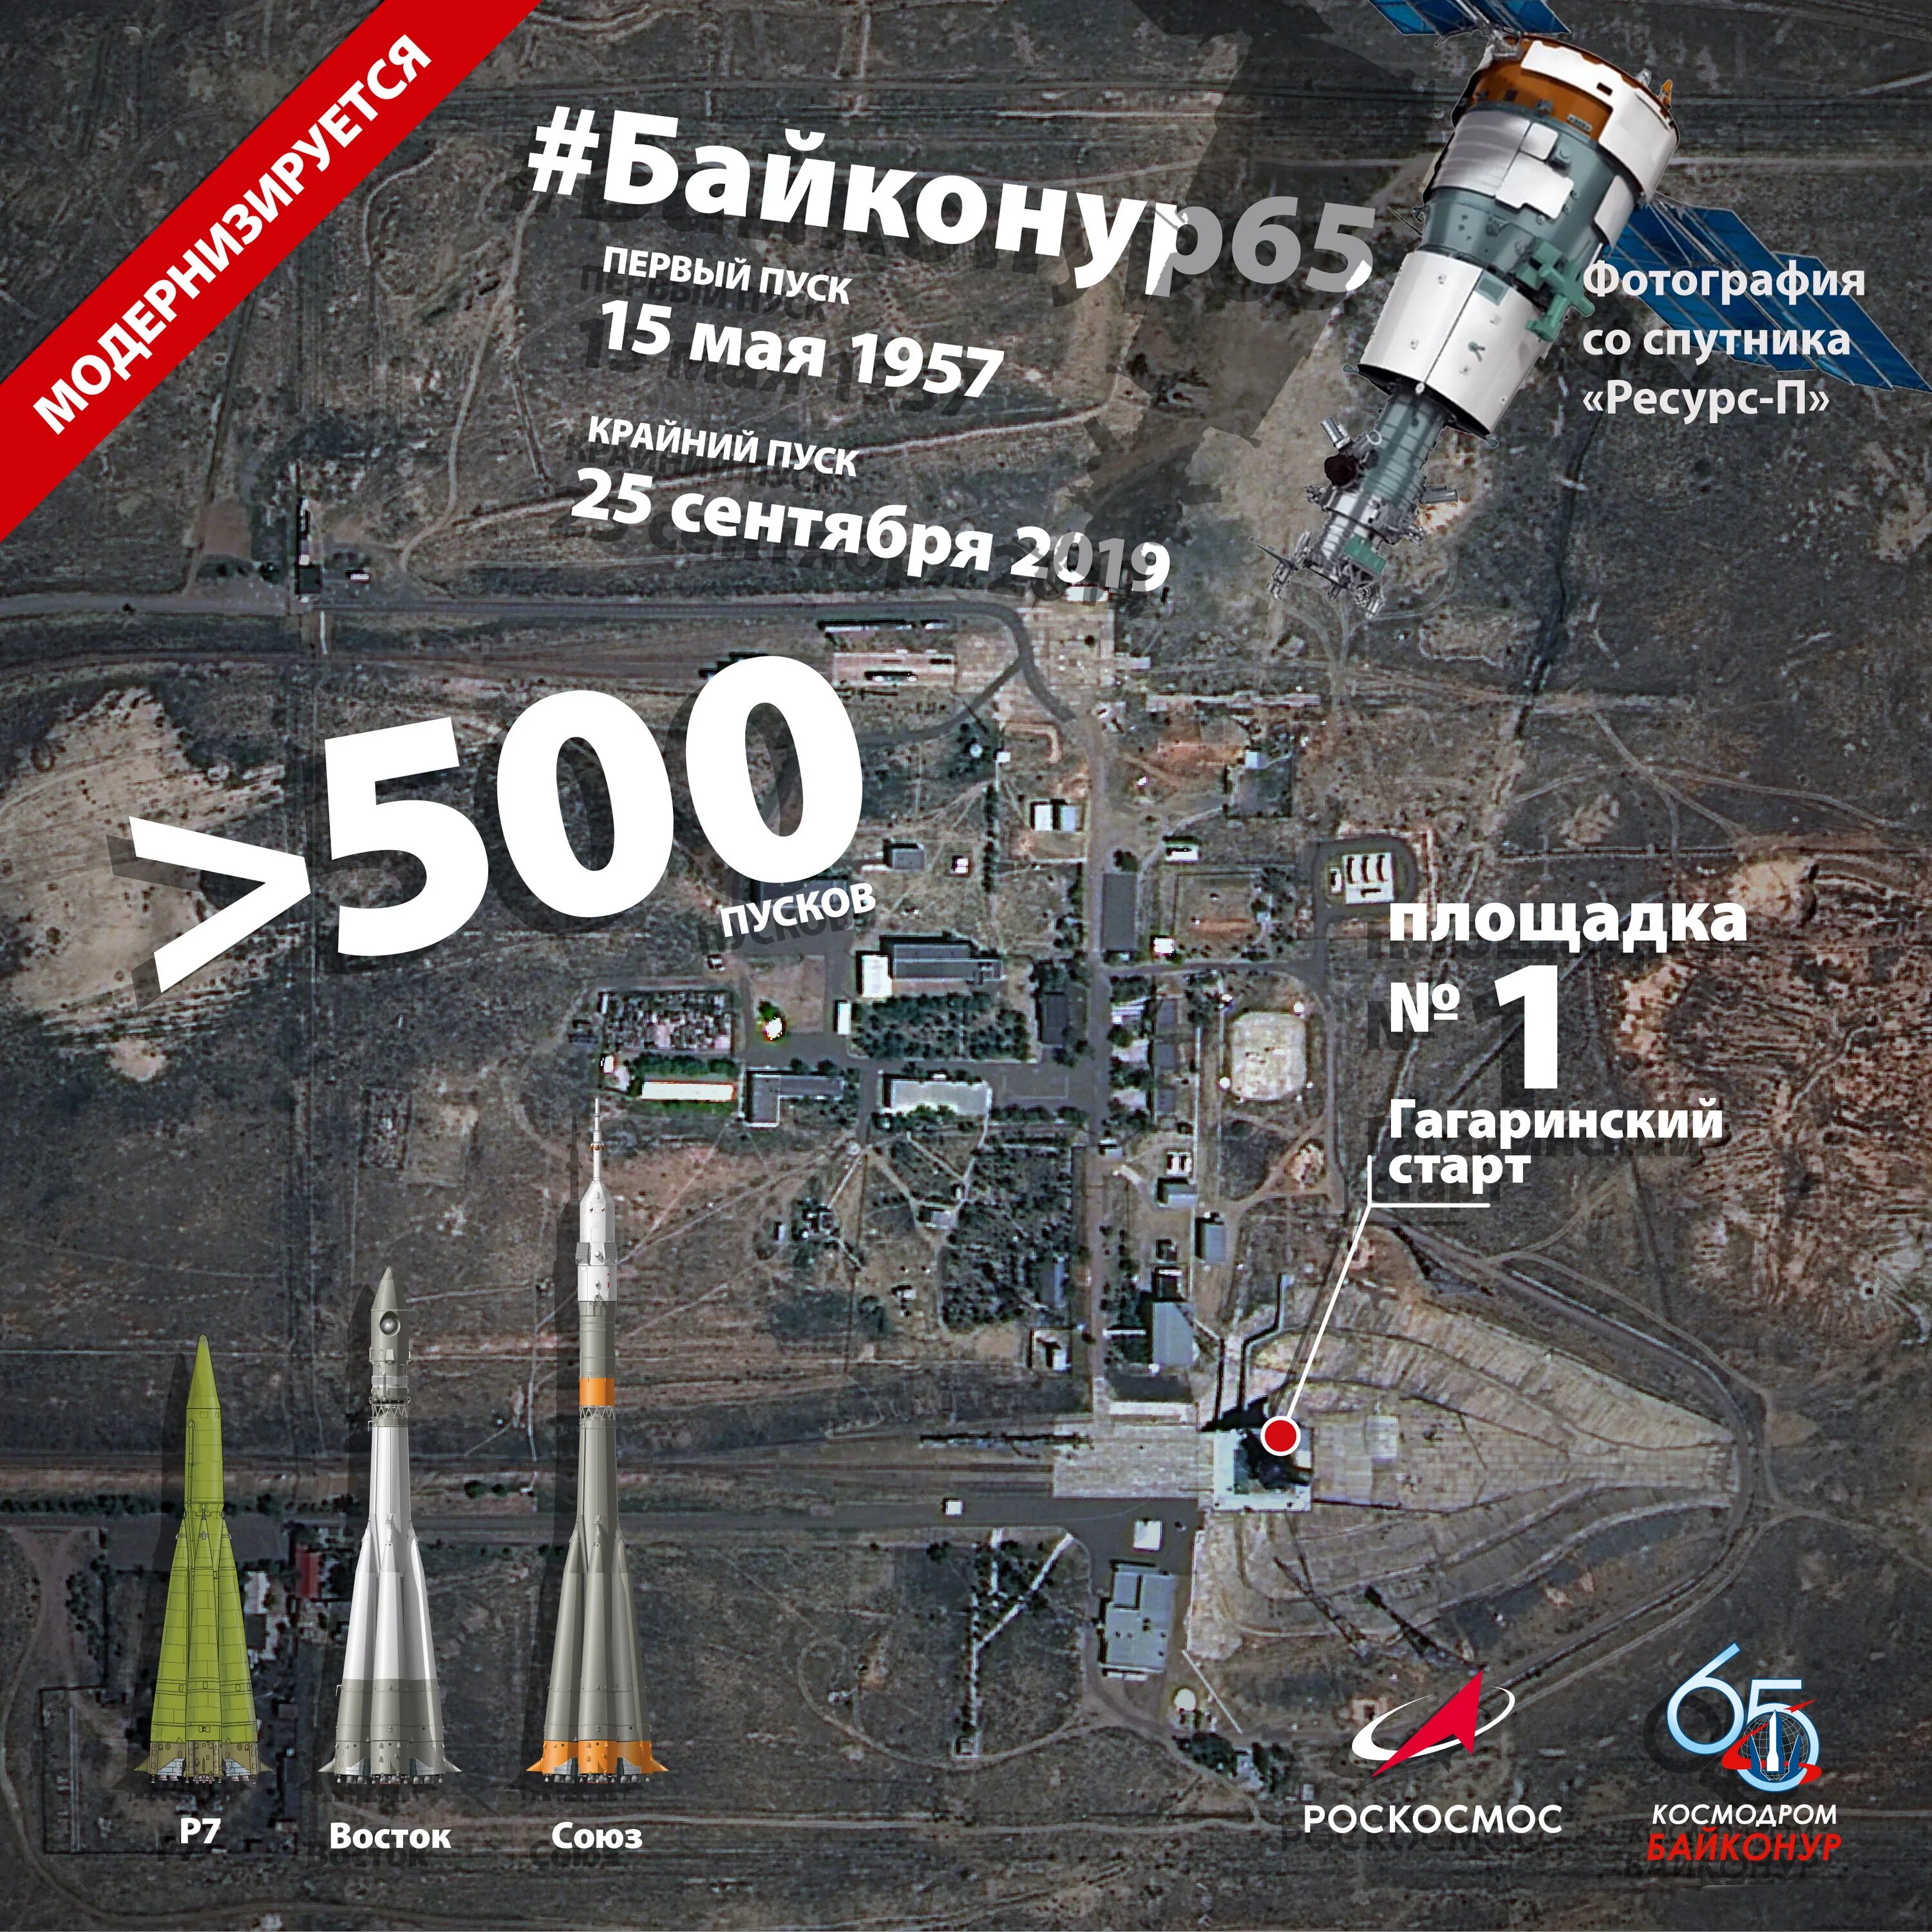 Где новый космодром. Байконур Гагаринский старт площадка 1. Космодром Байконур площадка 1. Территория космодрома Байконур на карте. Гагаринский старт на космодроме Байконур на карте.